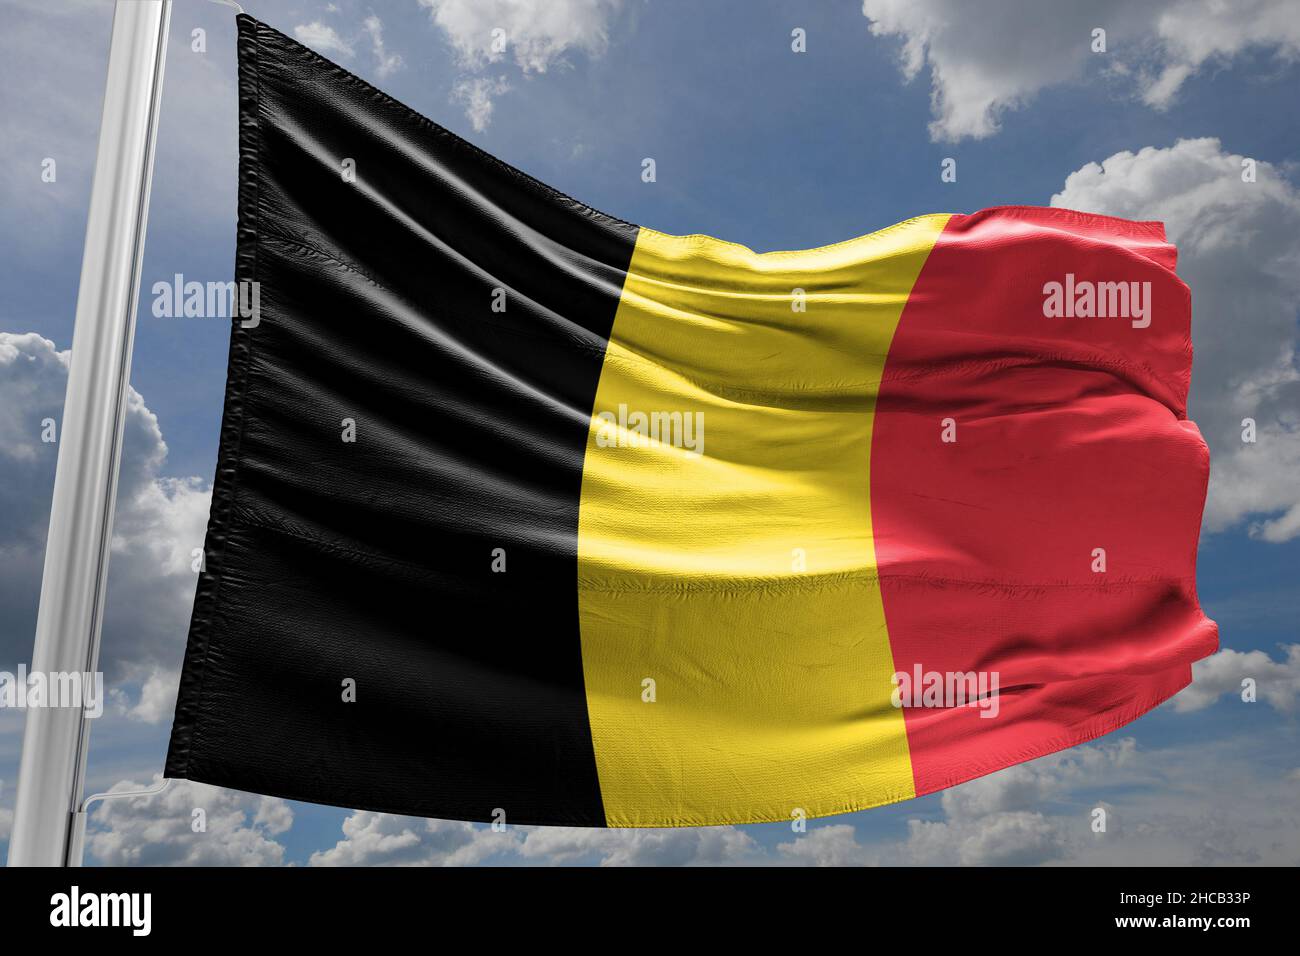 Le drapeau de la Belgique est un tricolore composé de trois bandes verticales égales affichant les couleurs nationales de la Belgique : noir, jaune et rouge Banque D'Images